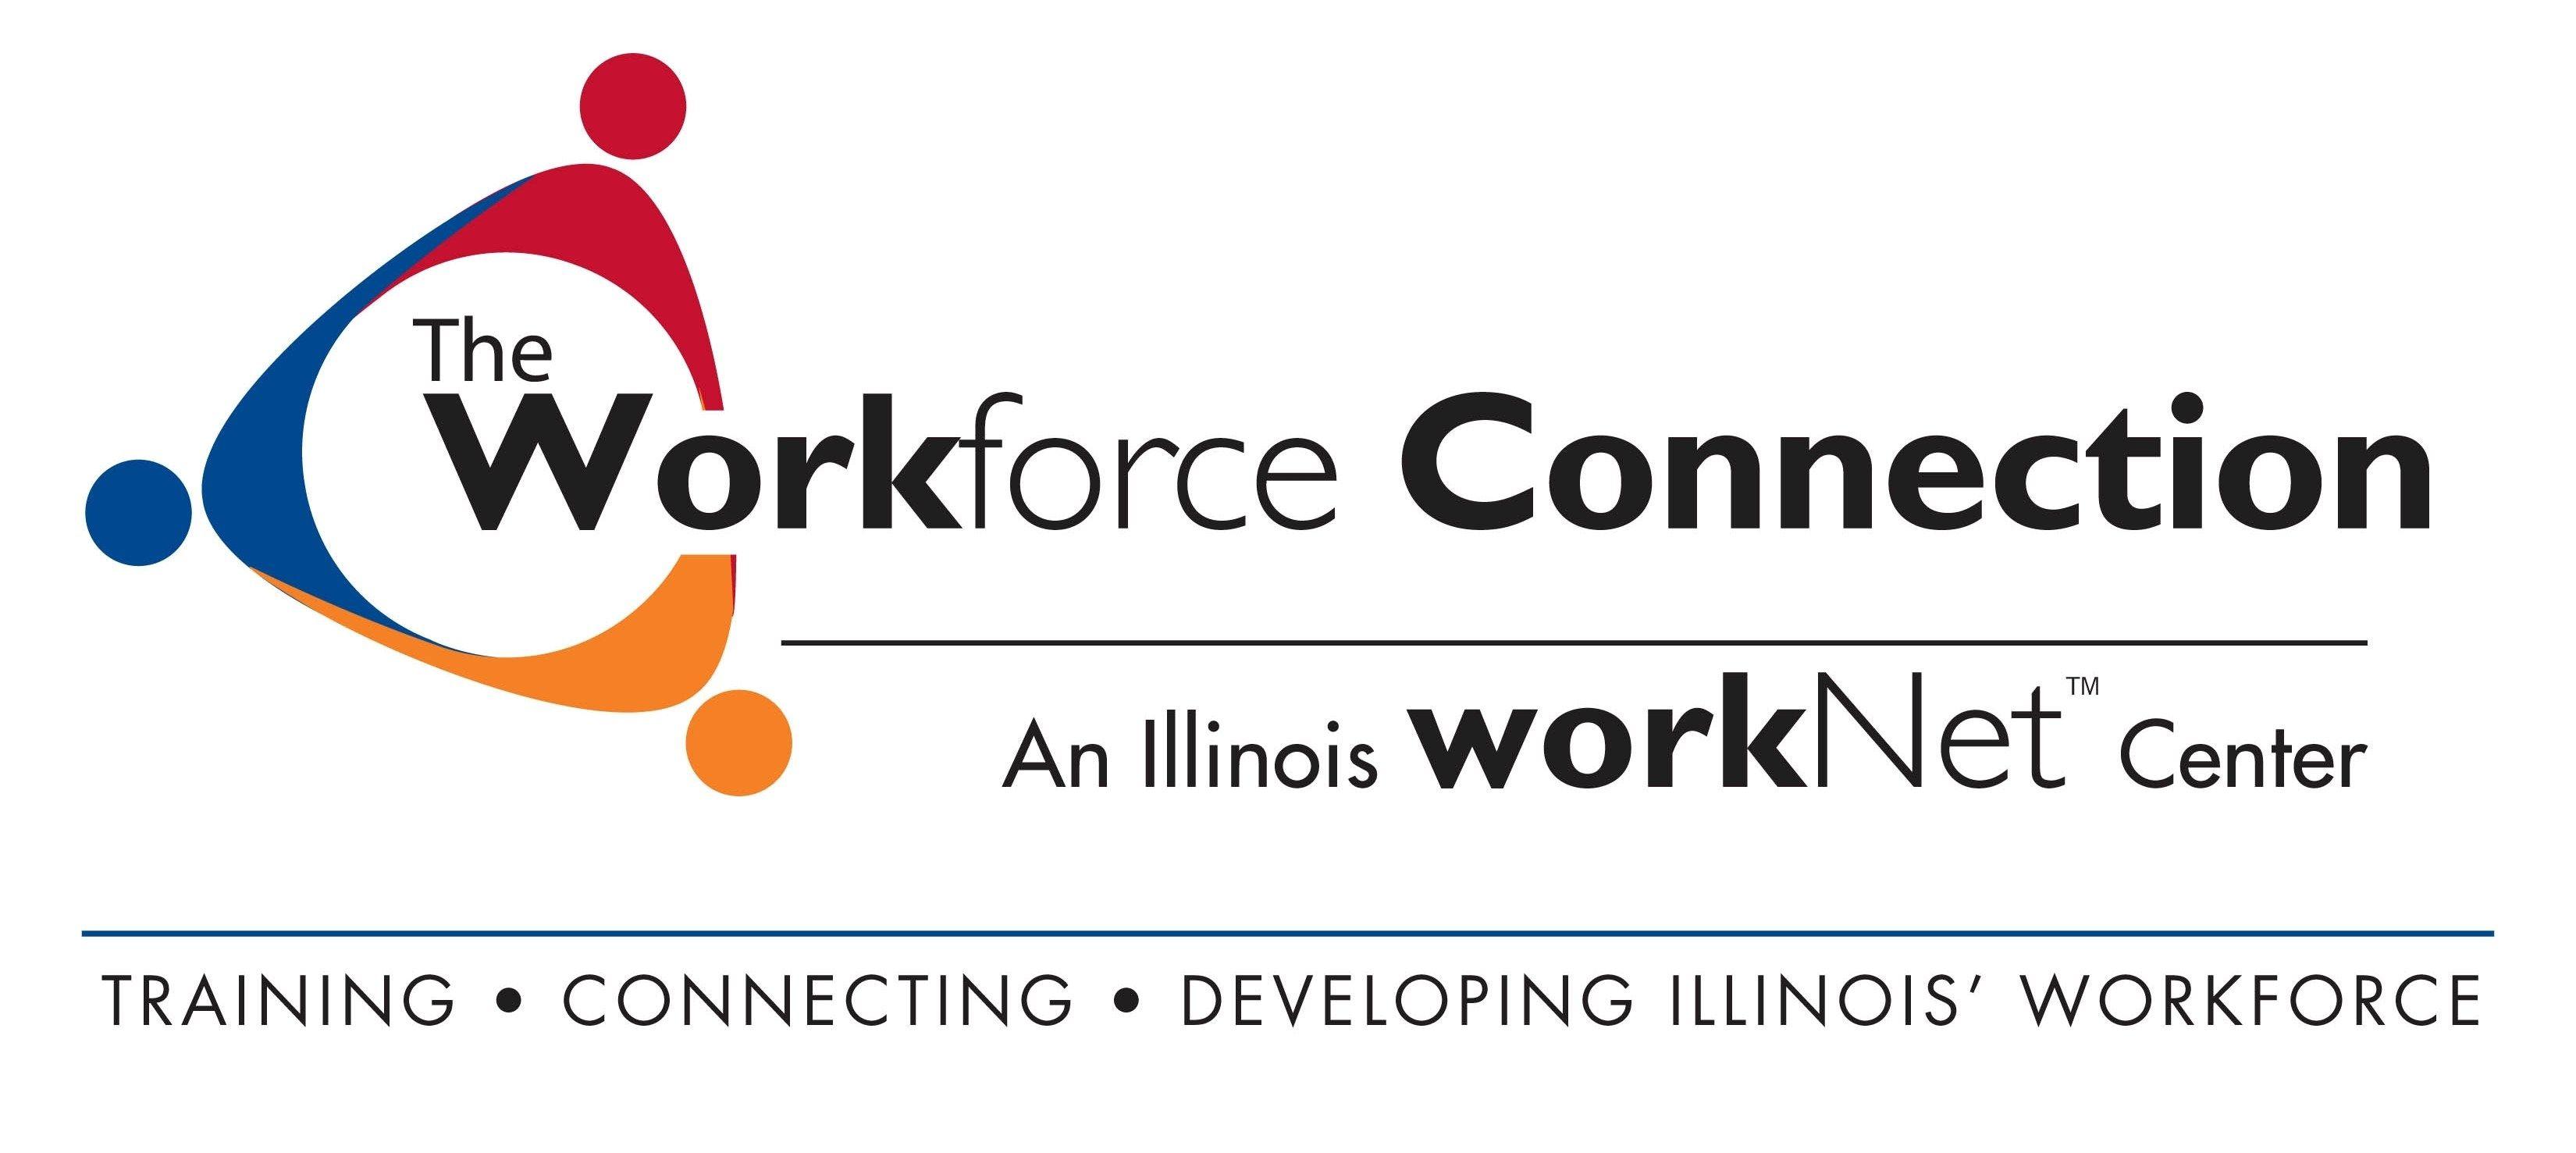 Workforce Logo - Workforce Connection logo, Illinois, USA Area